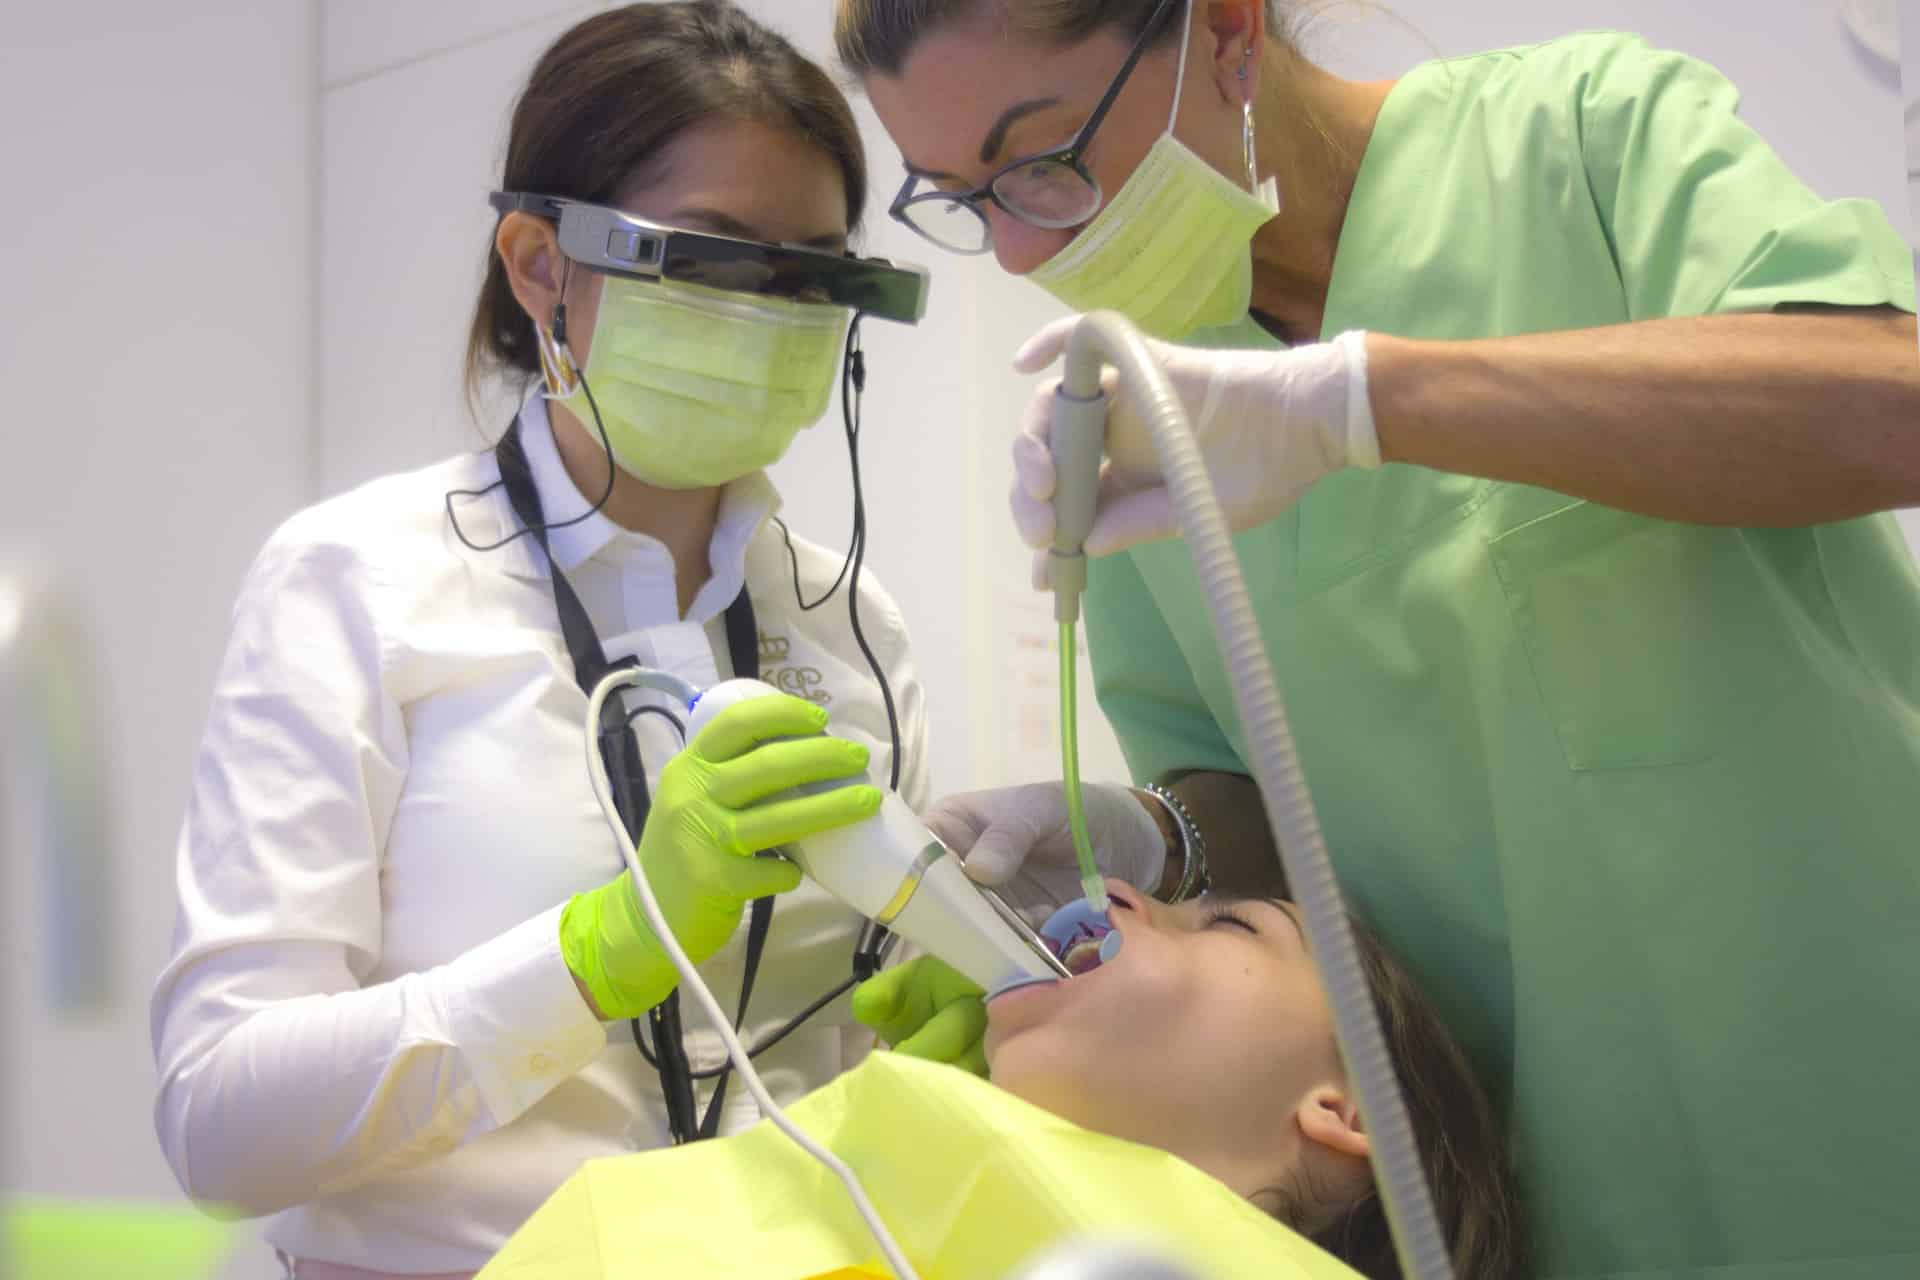 two people in scrubs performing dentistry